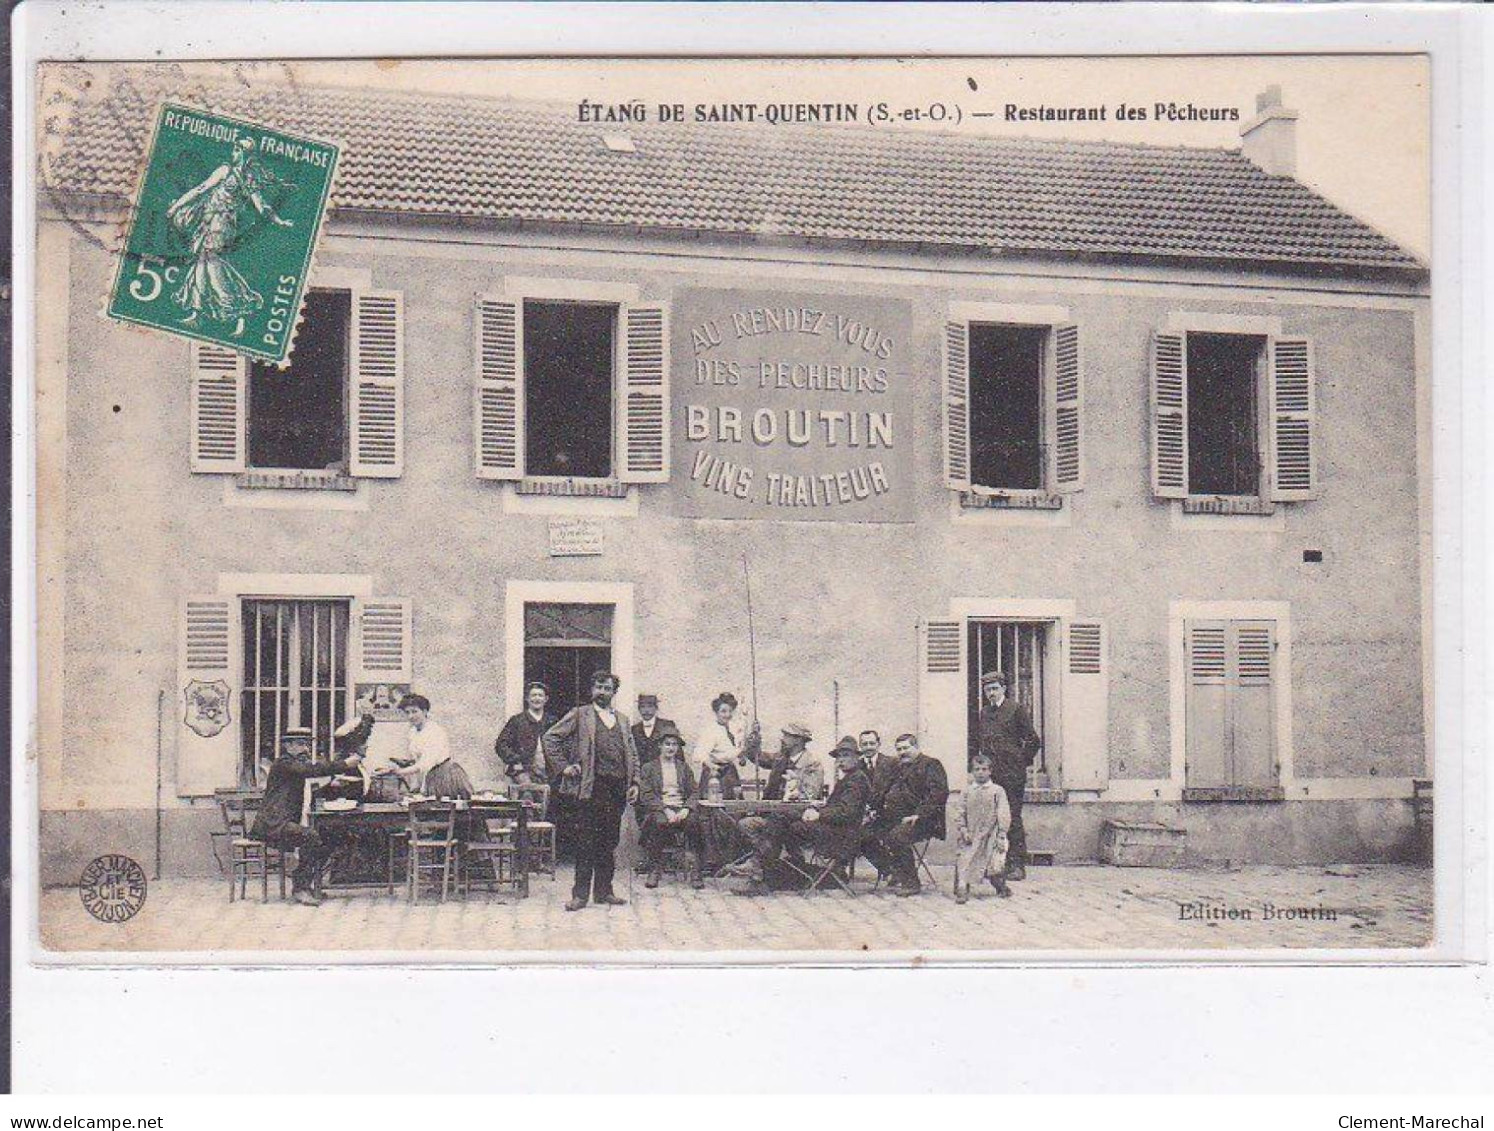 ETANG DE SAINT-QUENTIN: Restaurant Des Pêcheurs, Broutin - état - St. Quentin En Yvelines